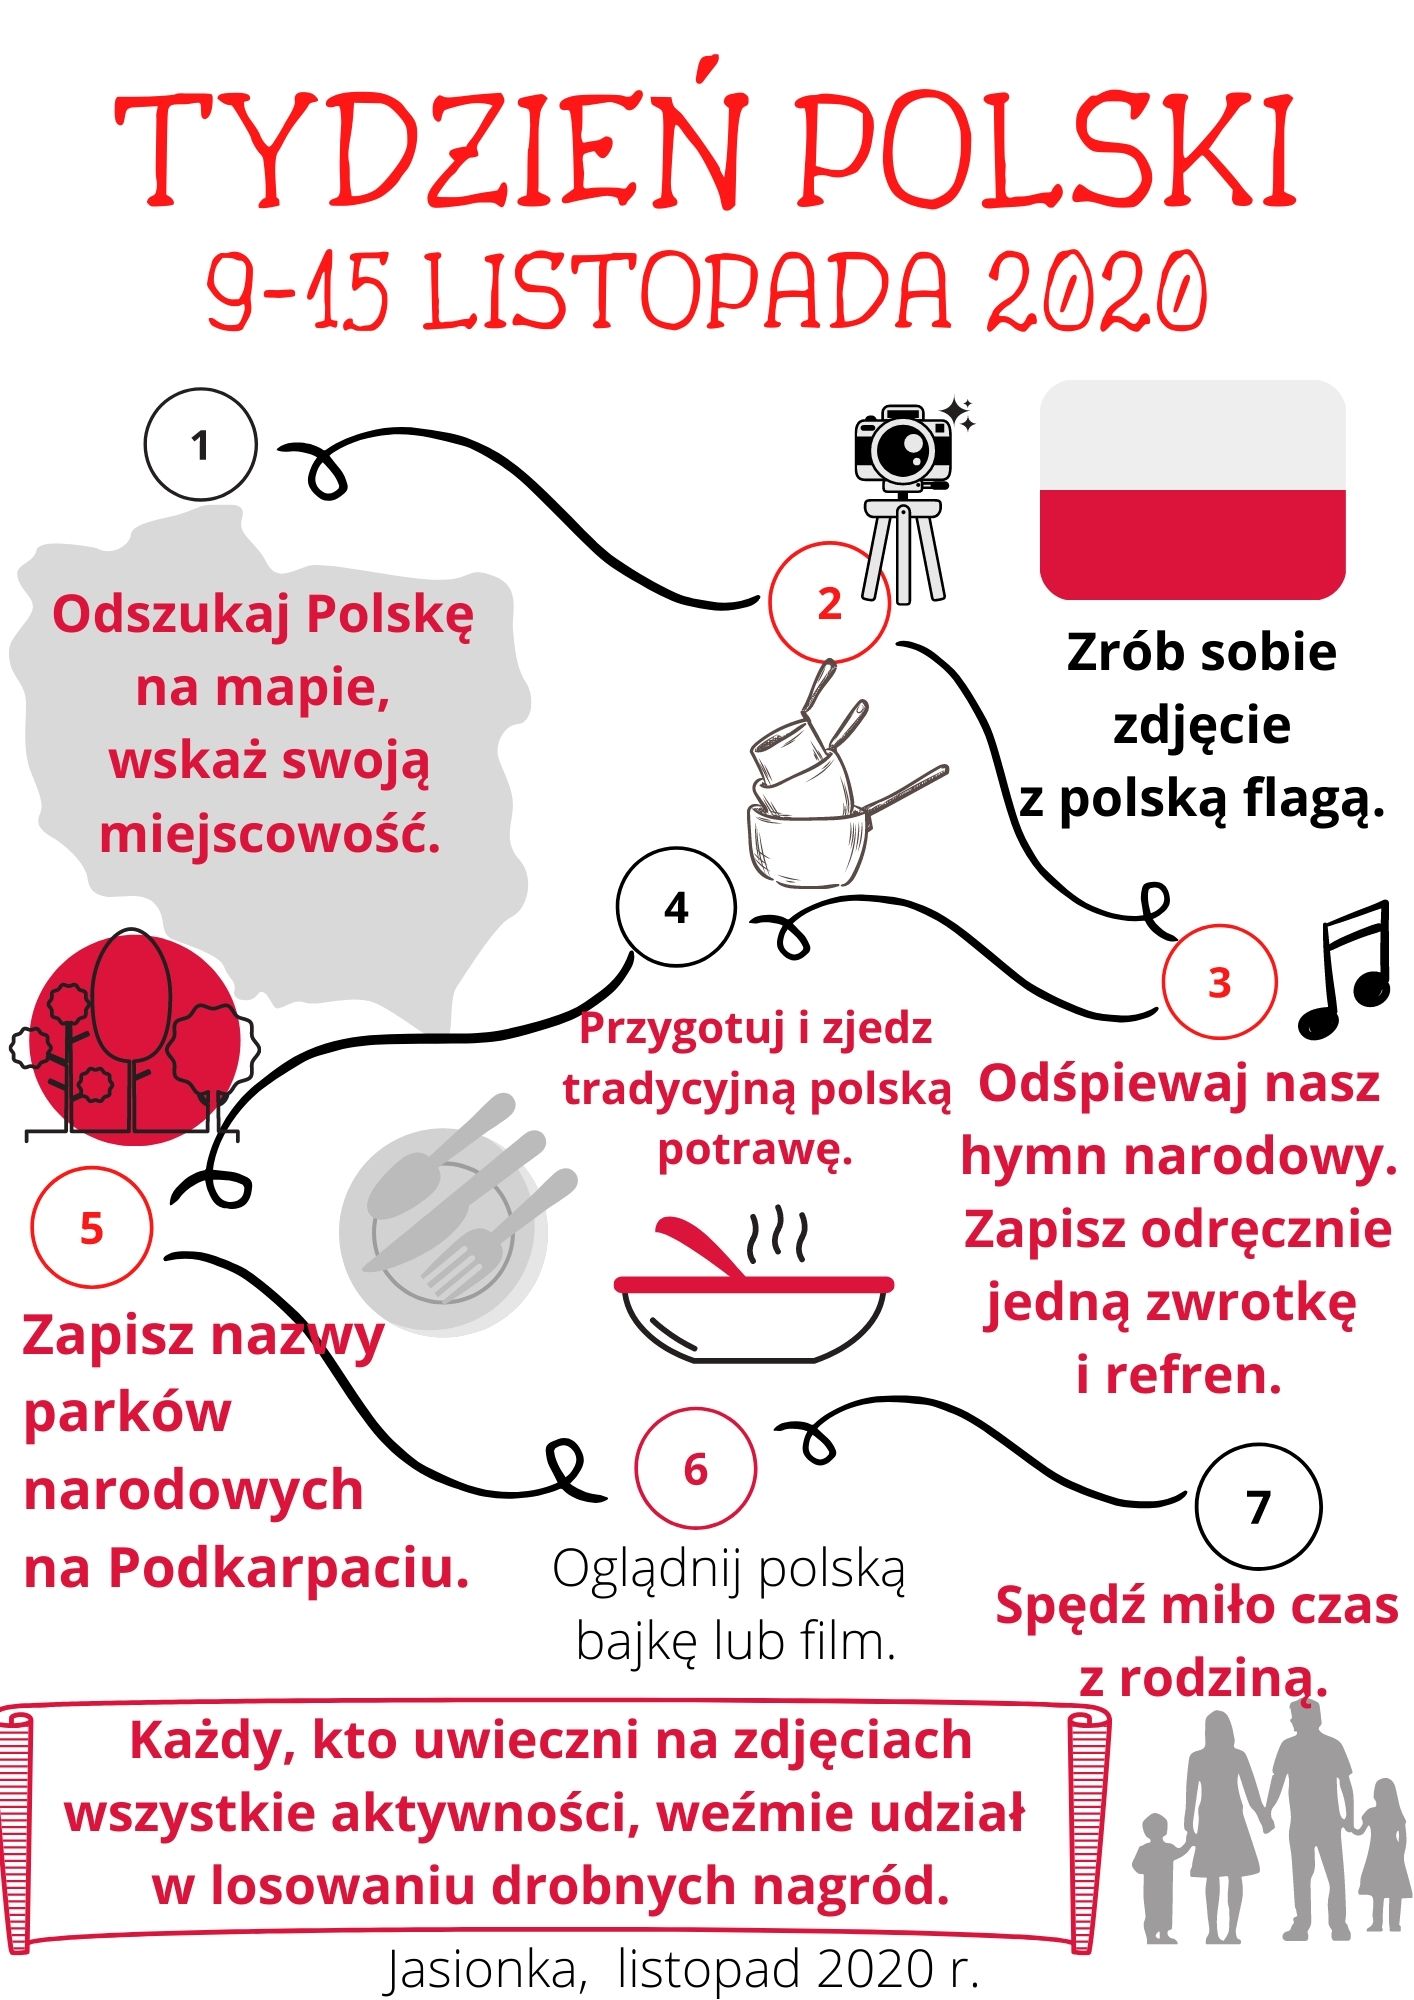 Tydzień Polski 2